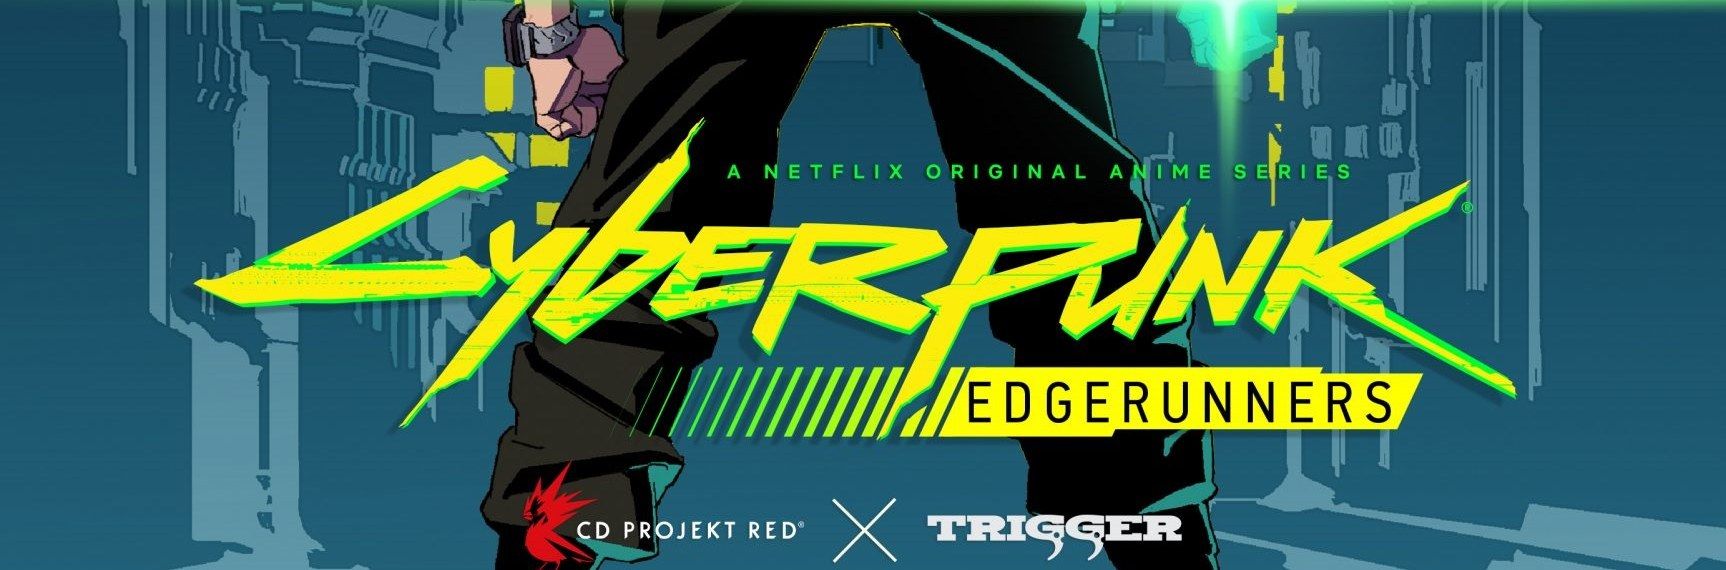 Cyberpunk Edgerunner Netflix Wallpapers - Wallpaper Cave